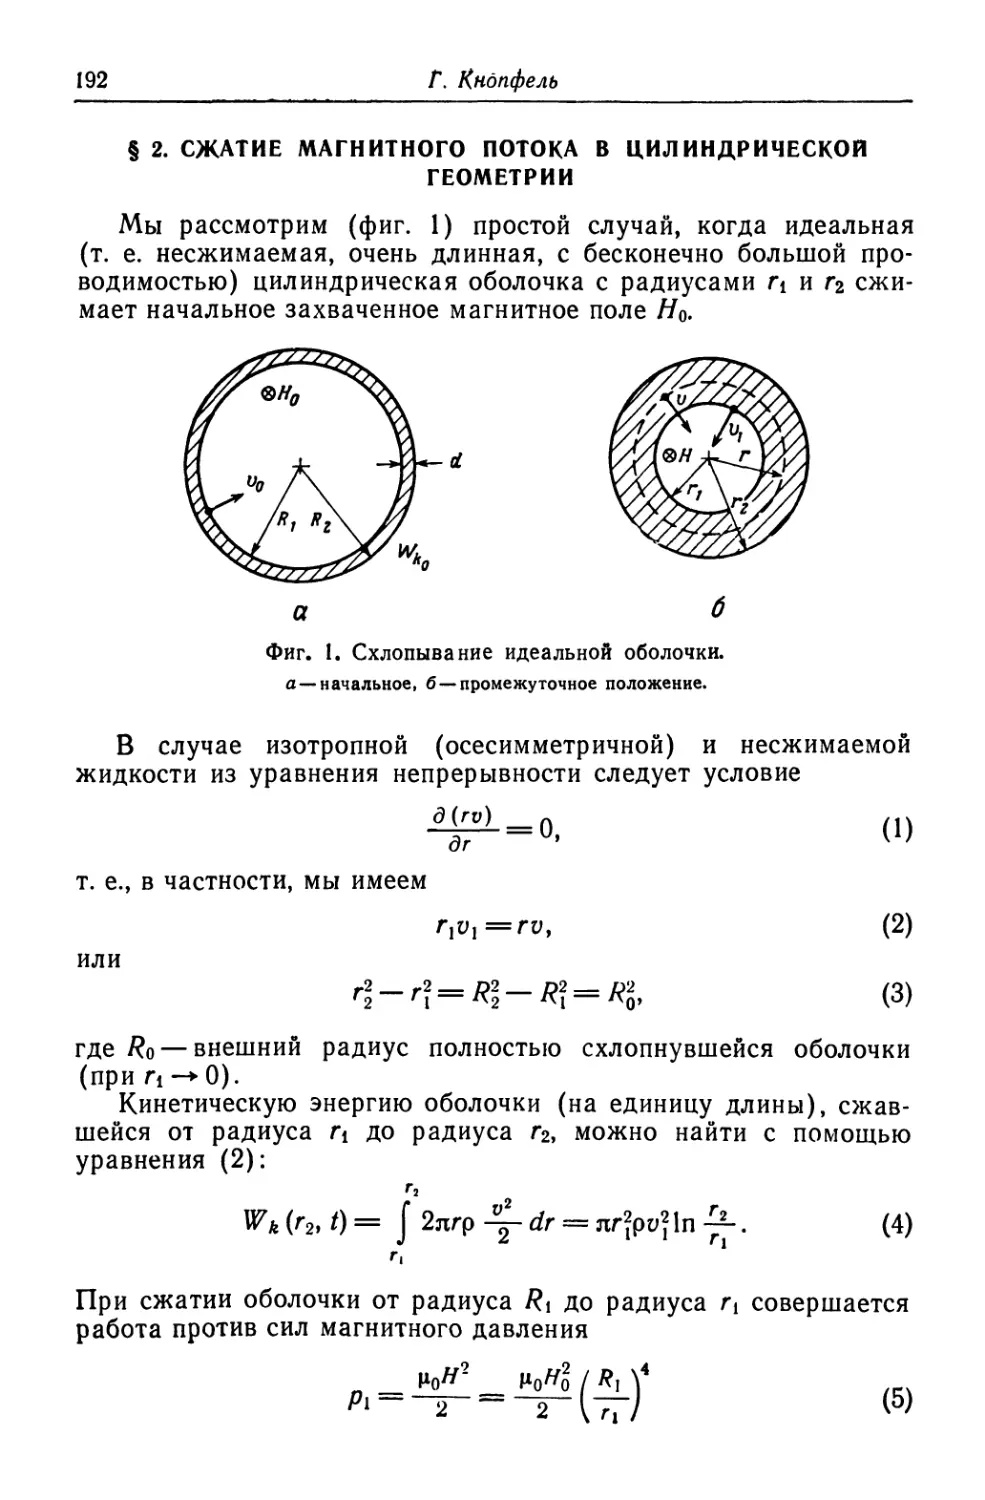 § 2. Сжатие магнитного потока в цилиндрической геометрии